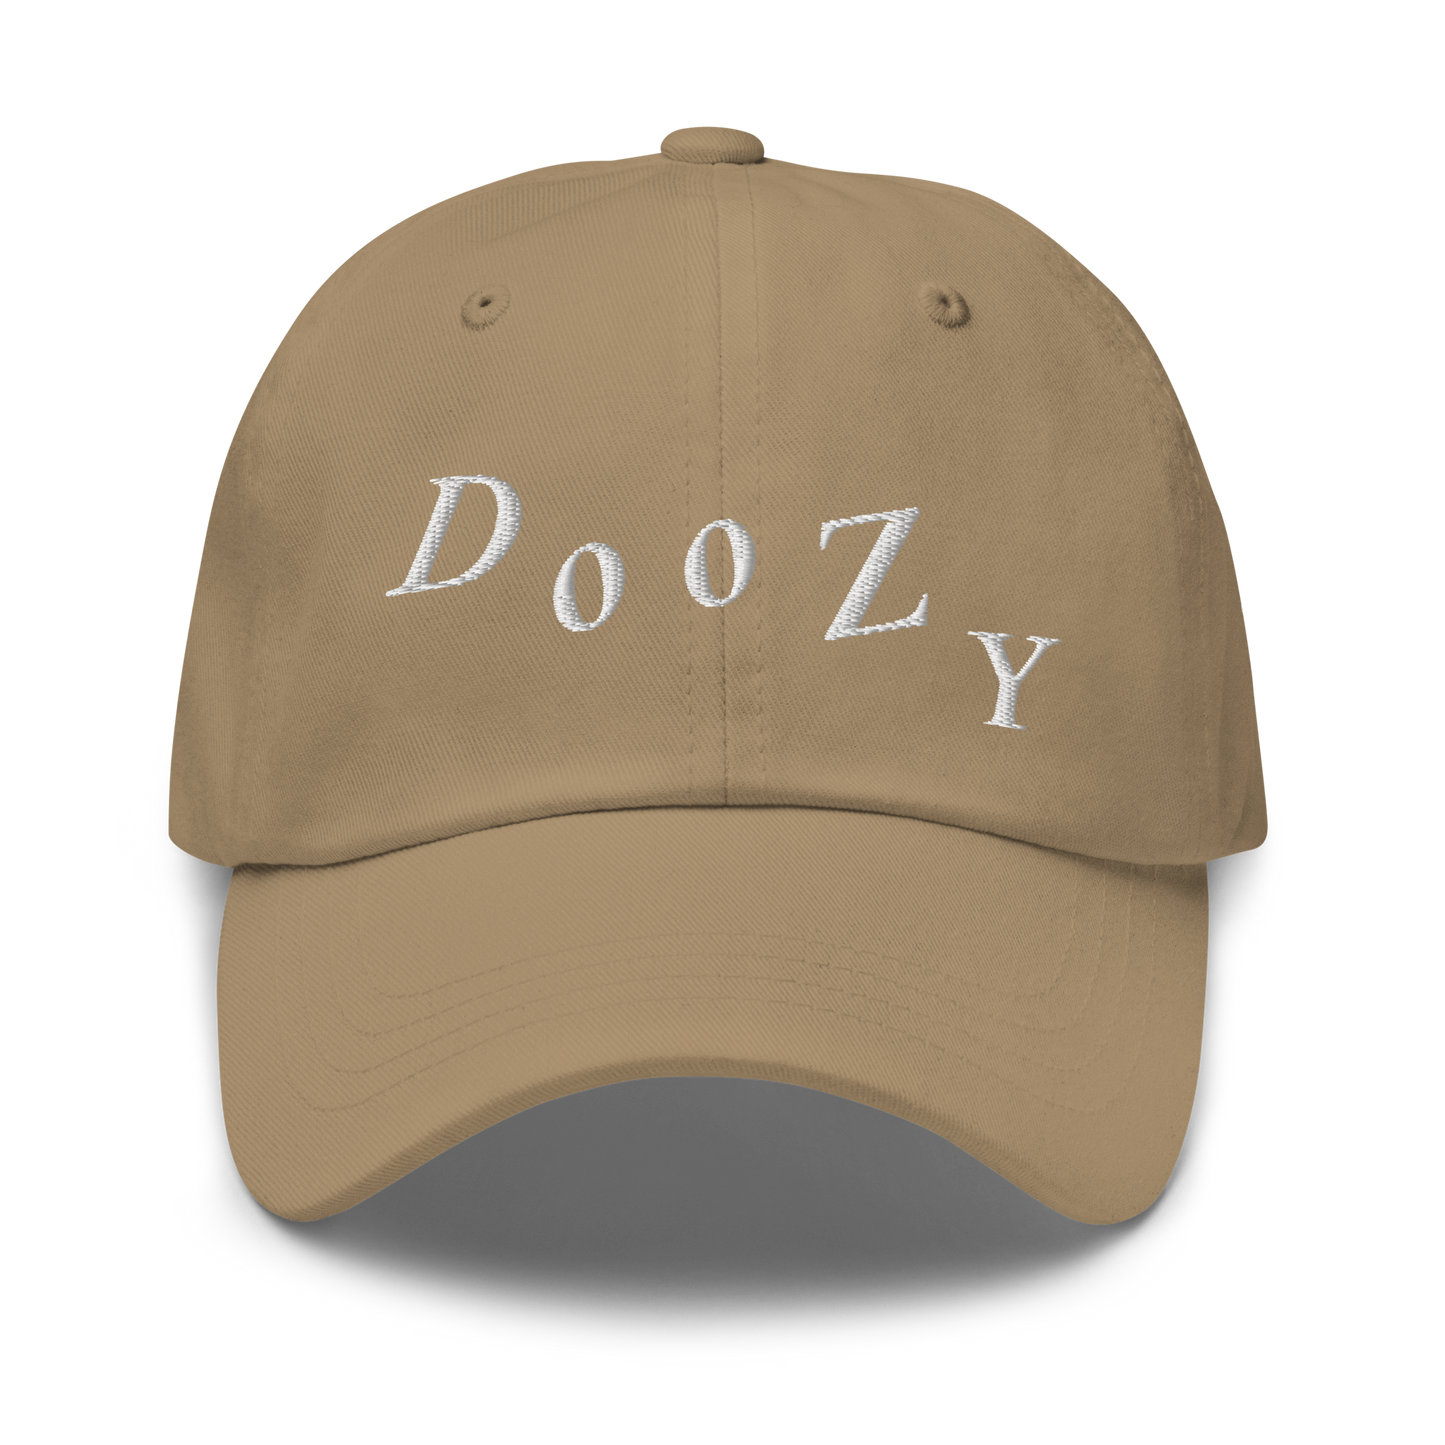 Doozy dad hat